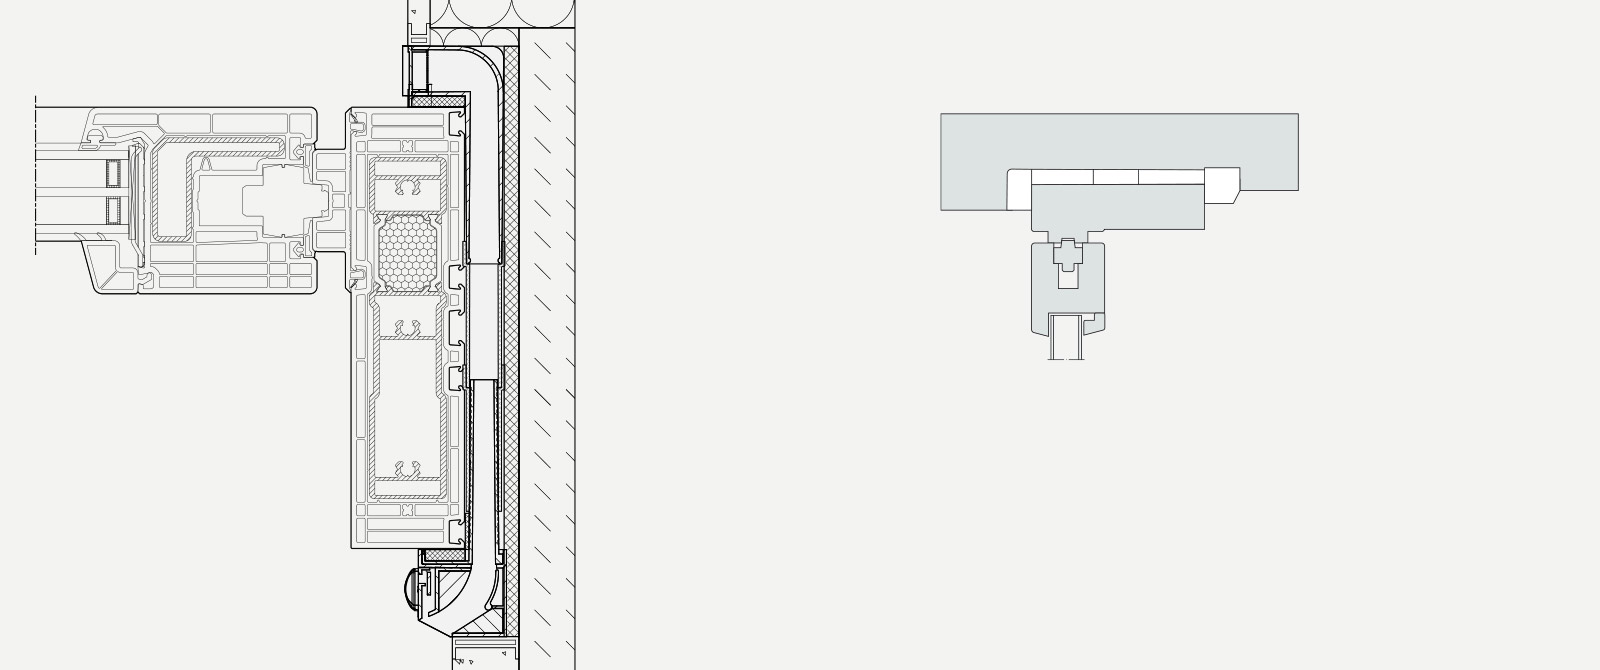 Komfortsysteme Fassadenluefter Aeromat-flex Einbau Zeichnung-schiebetuer